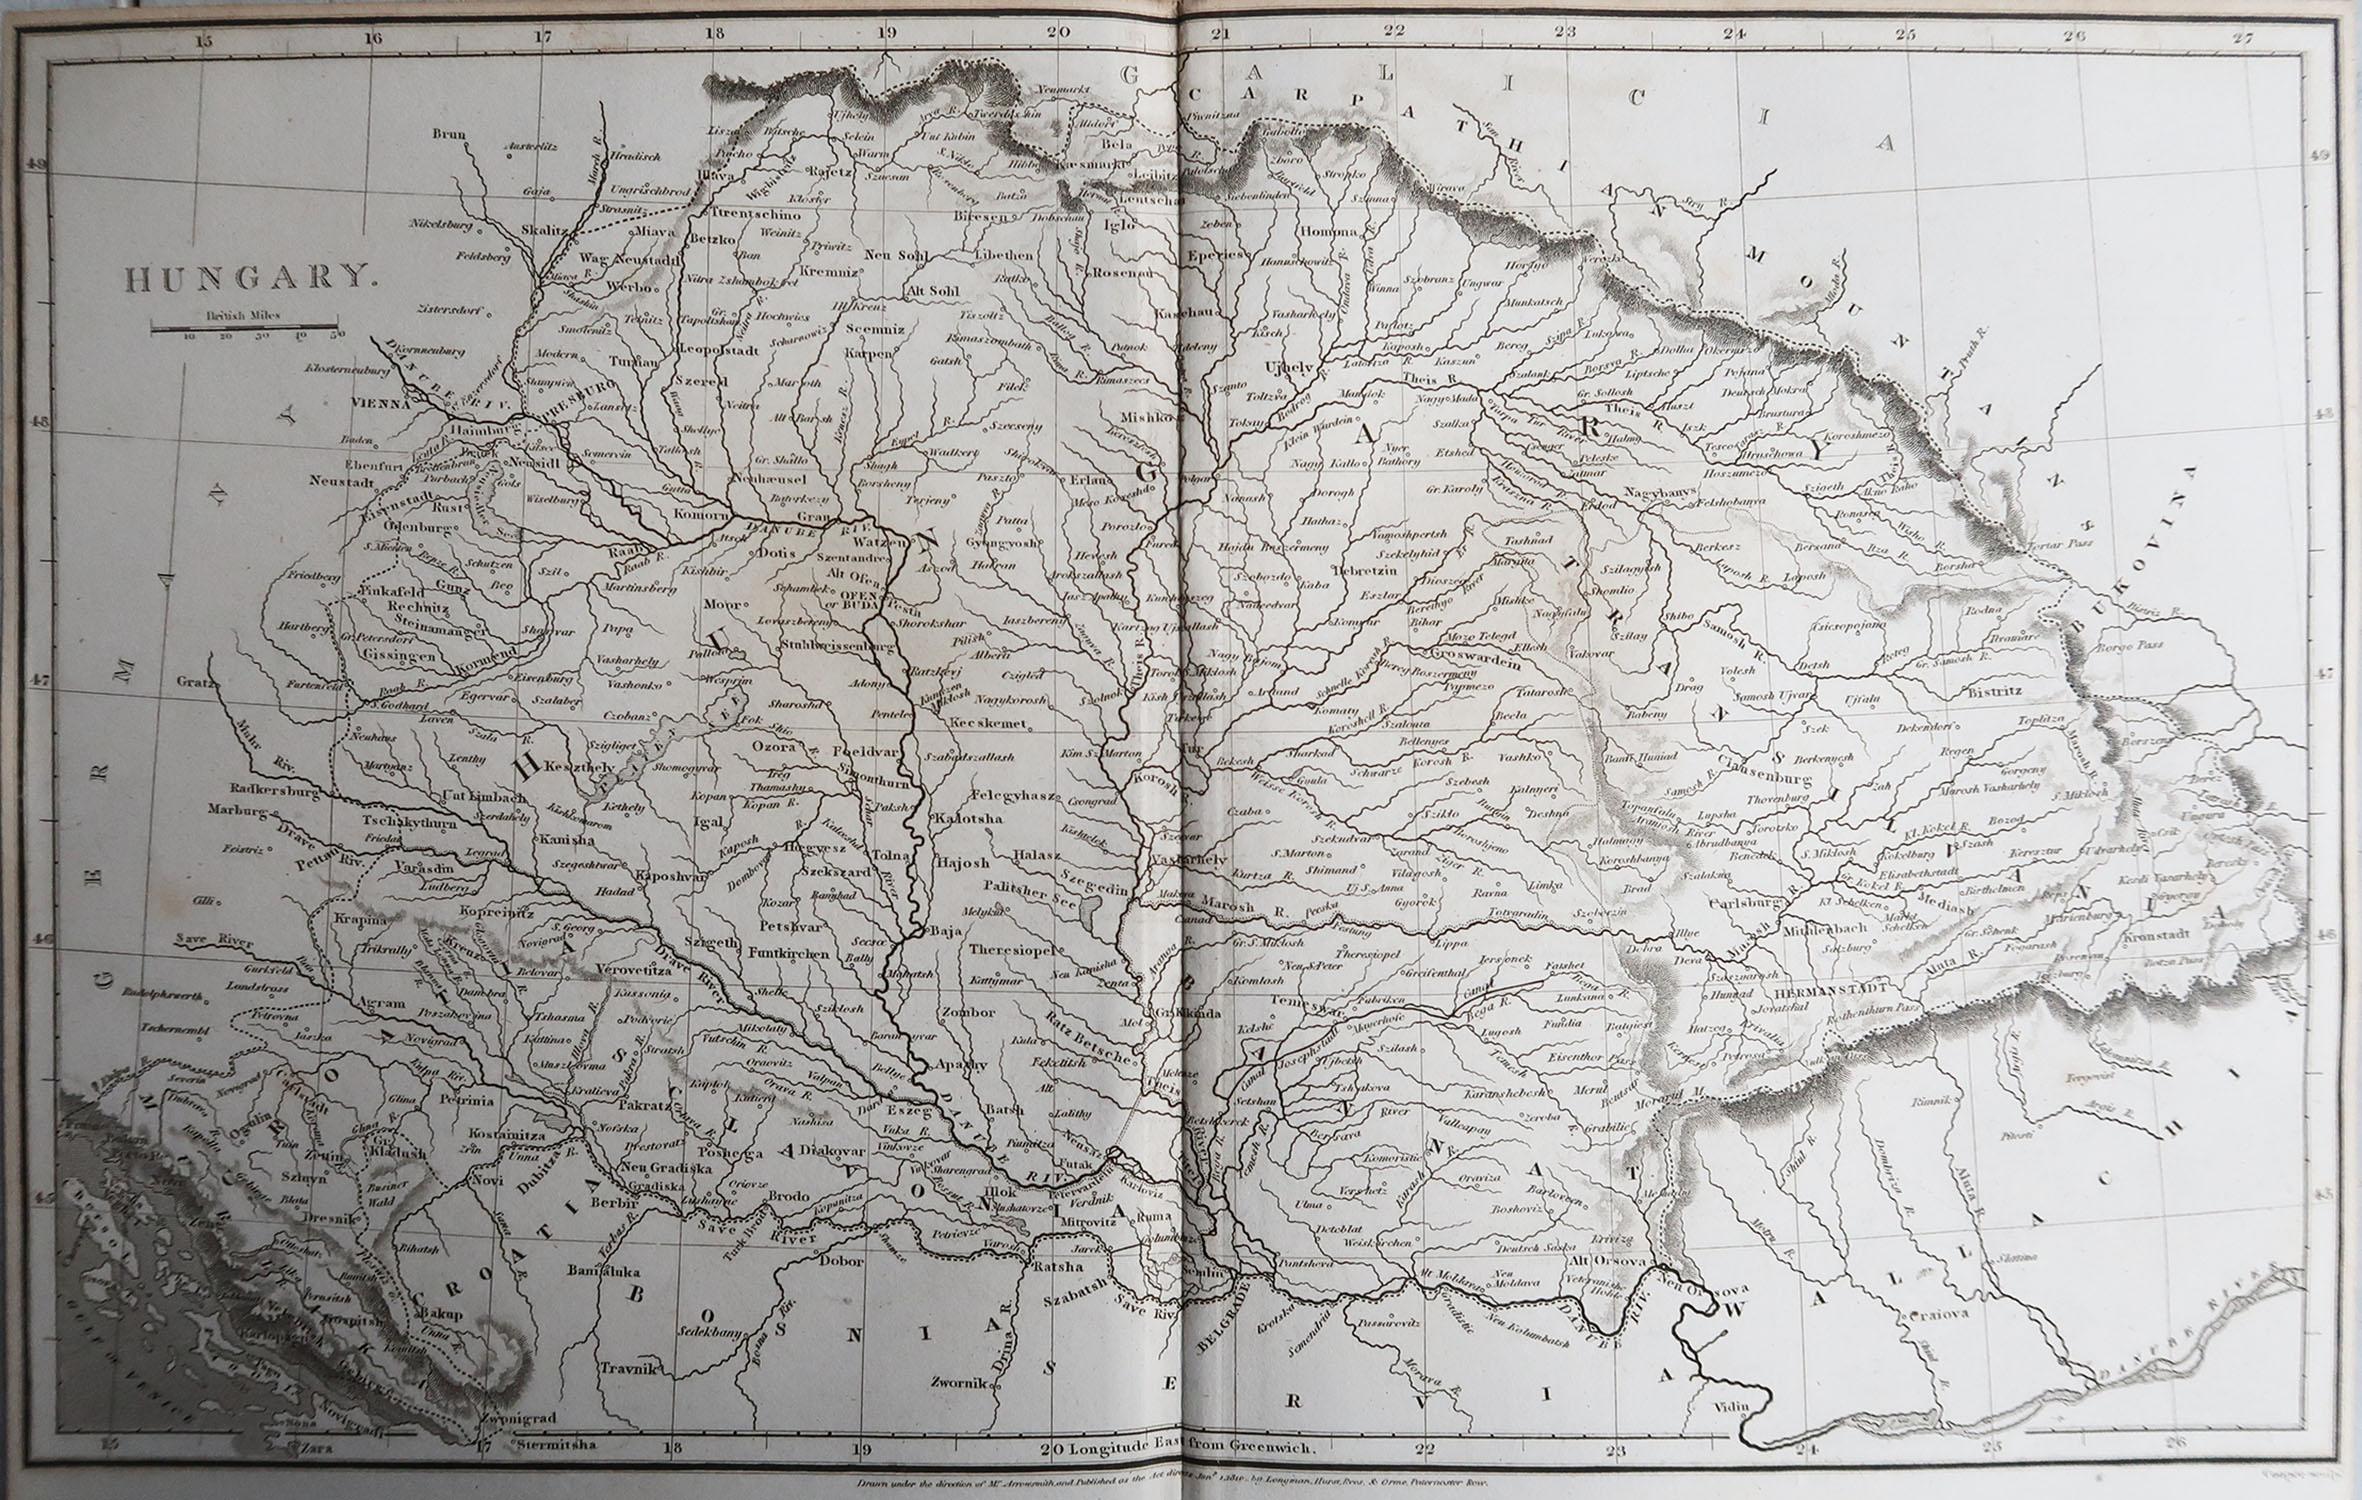 Grande carte de la Hongrie

Dessiné sous la direction d'Arrowsmith.

Gravure sur cuivre.

Publié par Longman, Hurst, Rees, Orme et Brown, 1820

Non encadré.